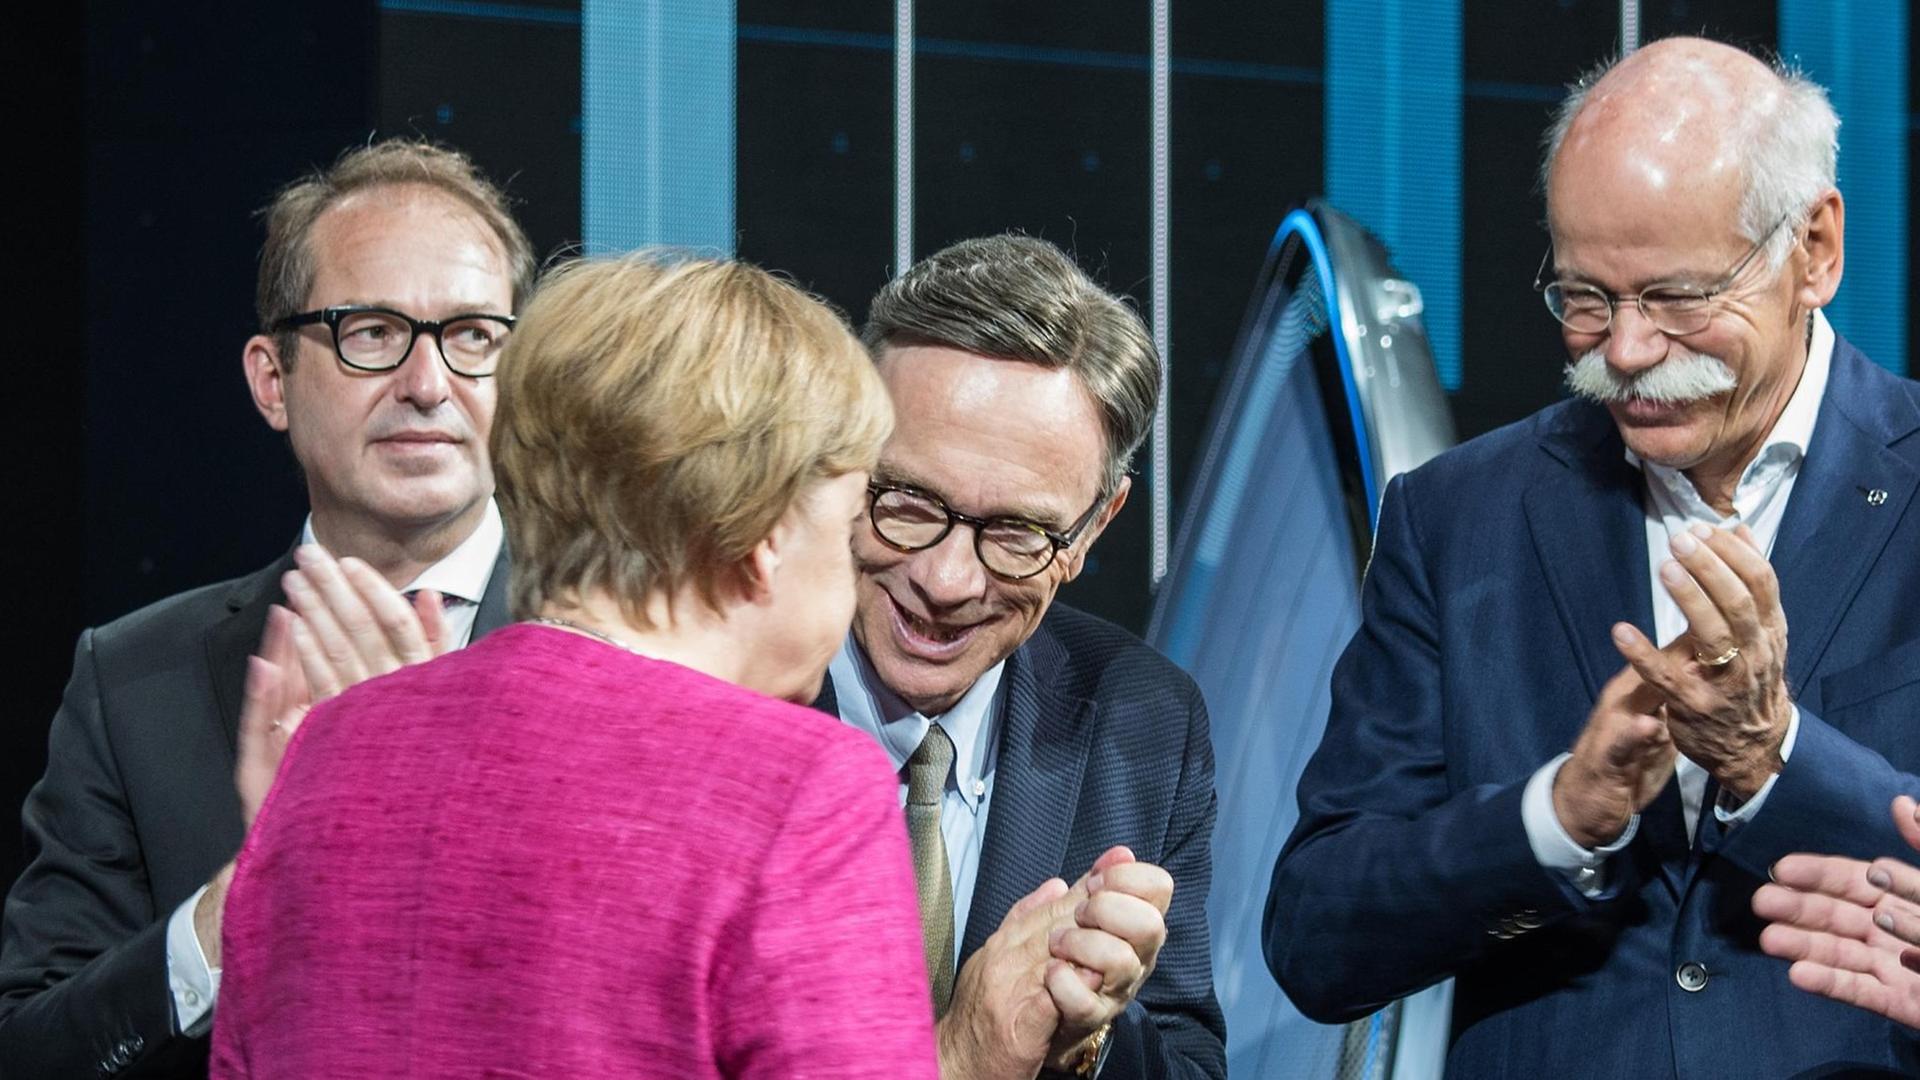 Verkehrsminister Alexander Dobrindt (l-r, CSU),VDA-Präsident Matthias Wissmann und der Vorstandsvorsitzende der Daimler AG, Dieter Zetsche, applaudieren der Bundeskanzlerin Angela Merkel (CDU) am 14.09.2017